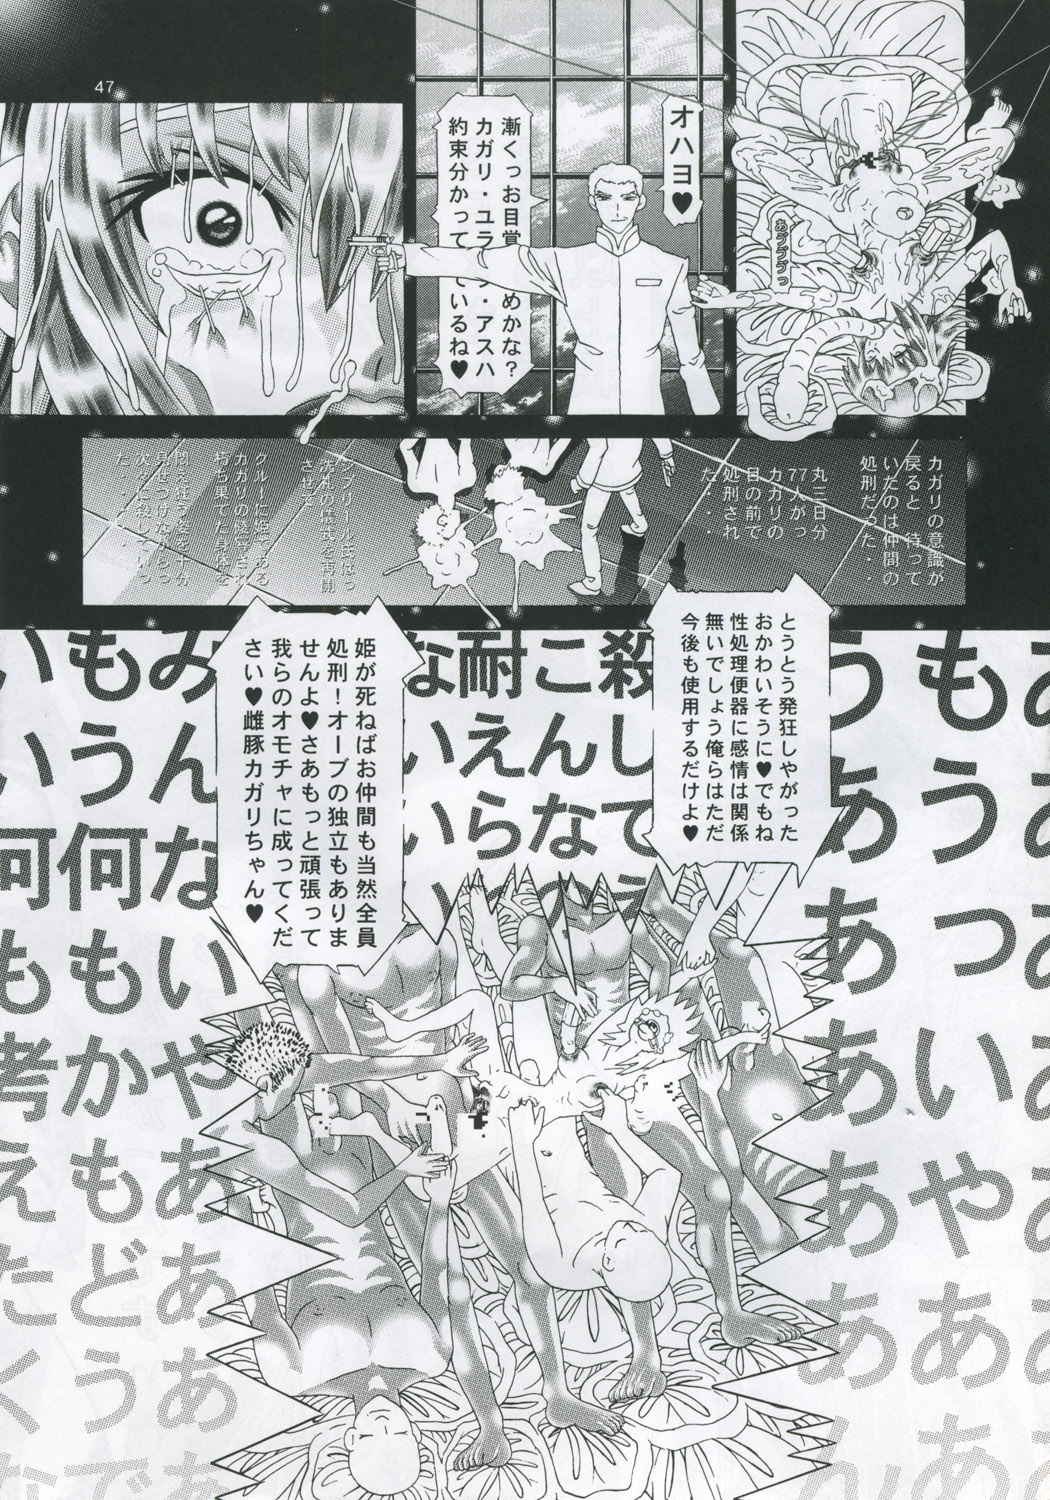 [柿ノ房 (柿ノ本歌麿)] RANDOM NUDE Vol.4 - Cagalli Yula Athha (機動戦士ガンダムSEED DESTINY)